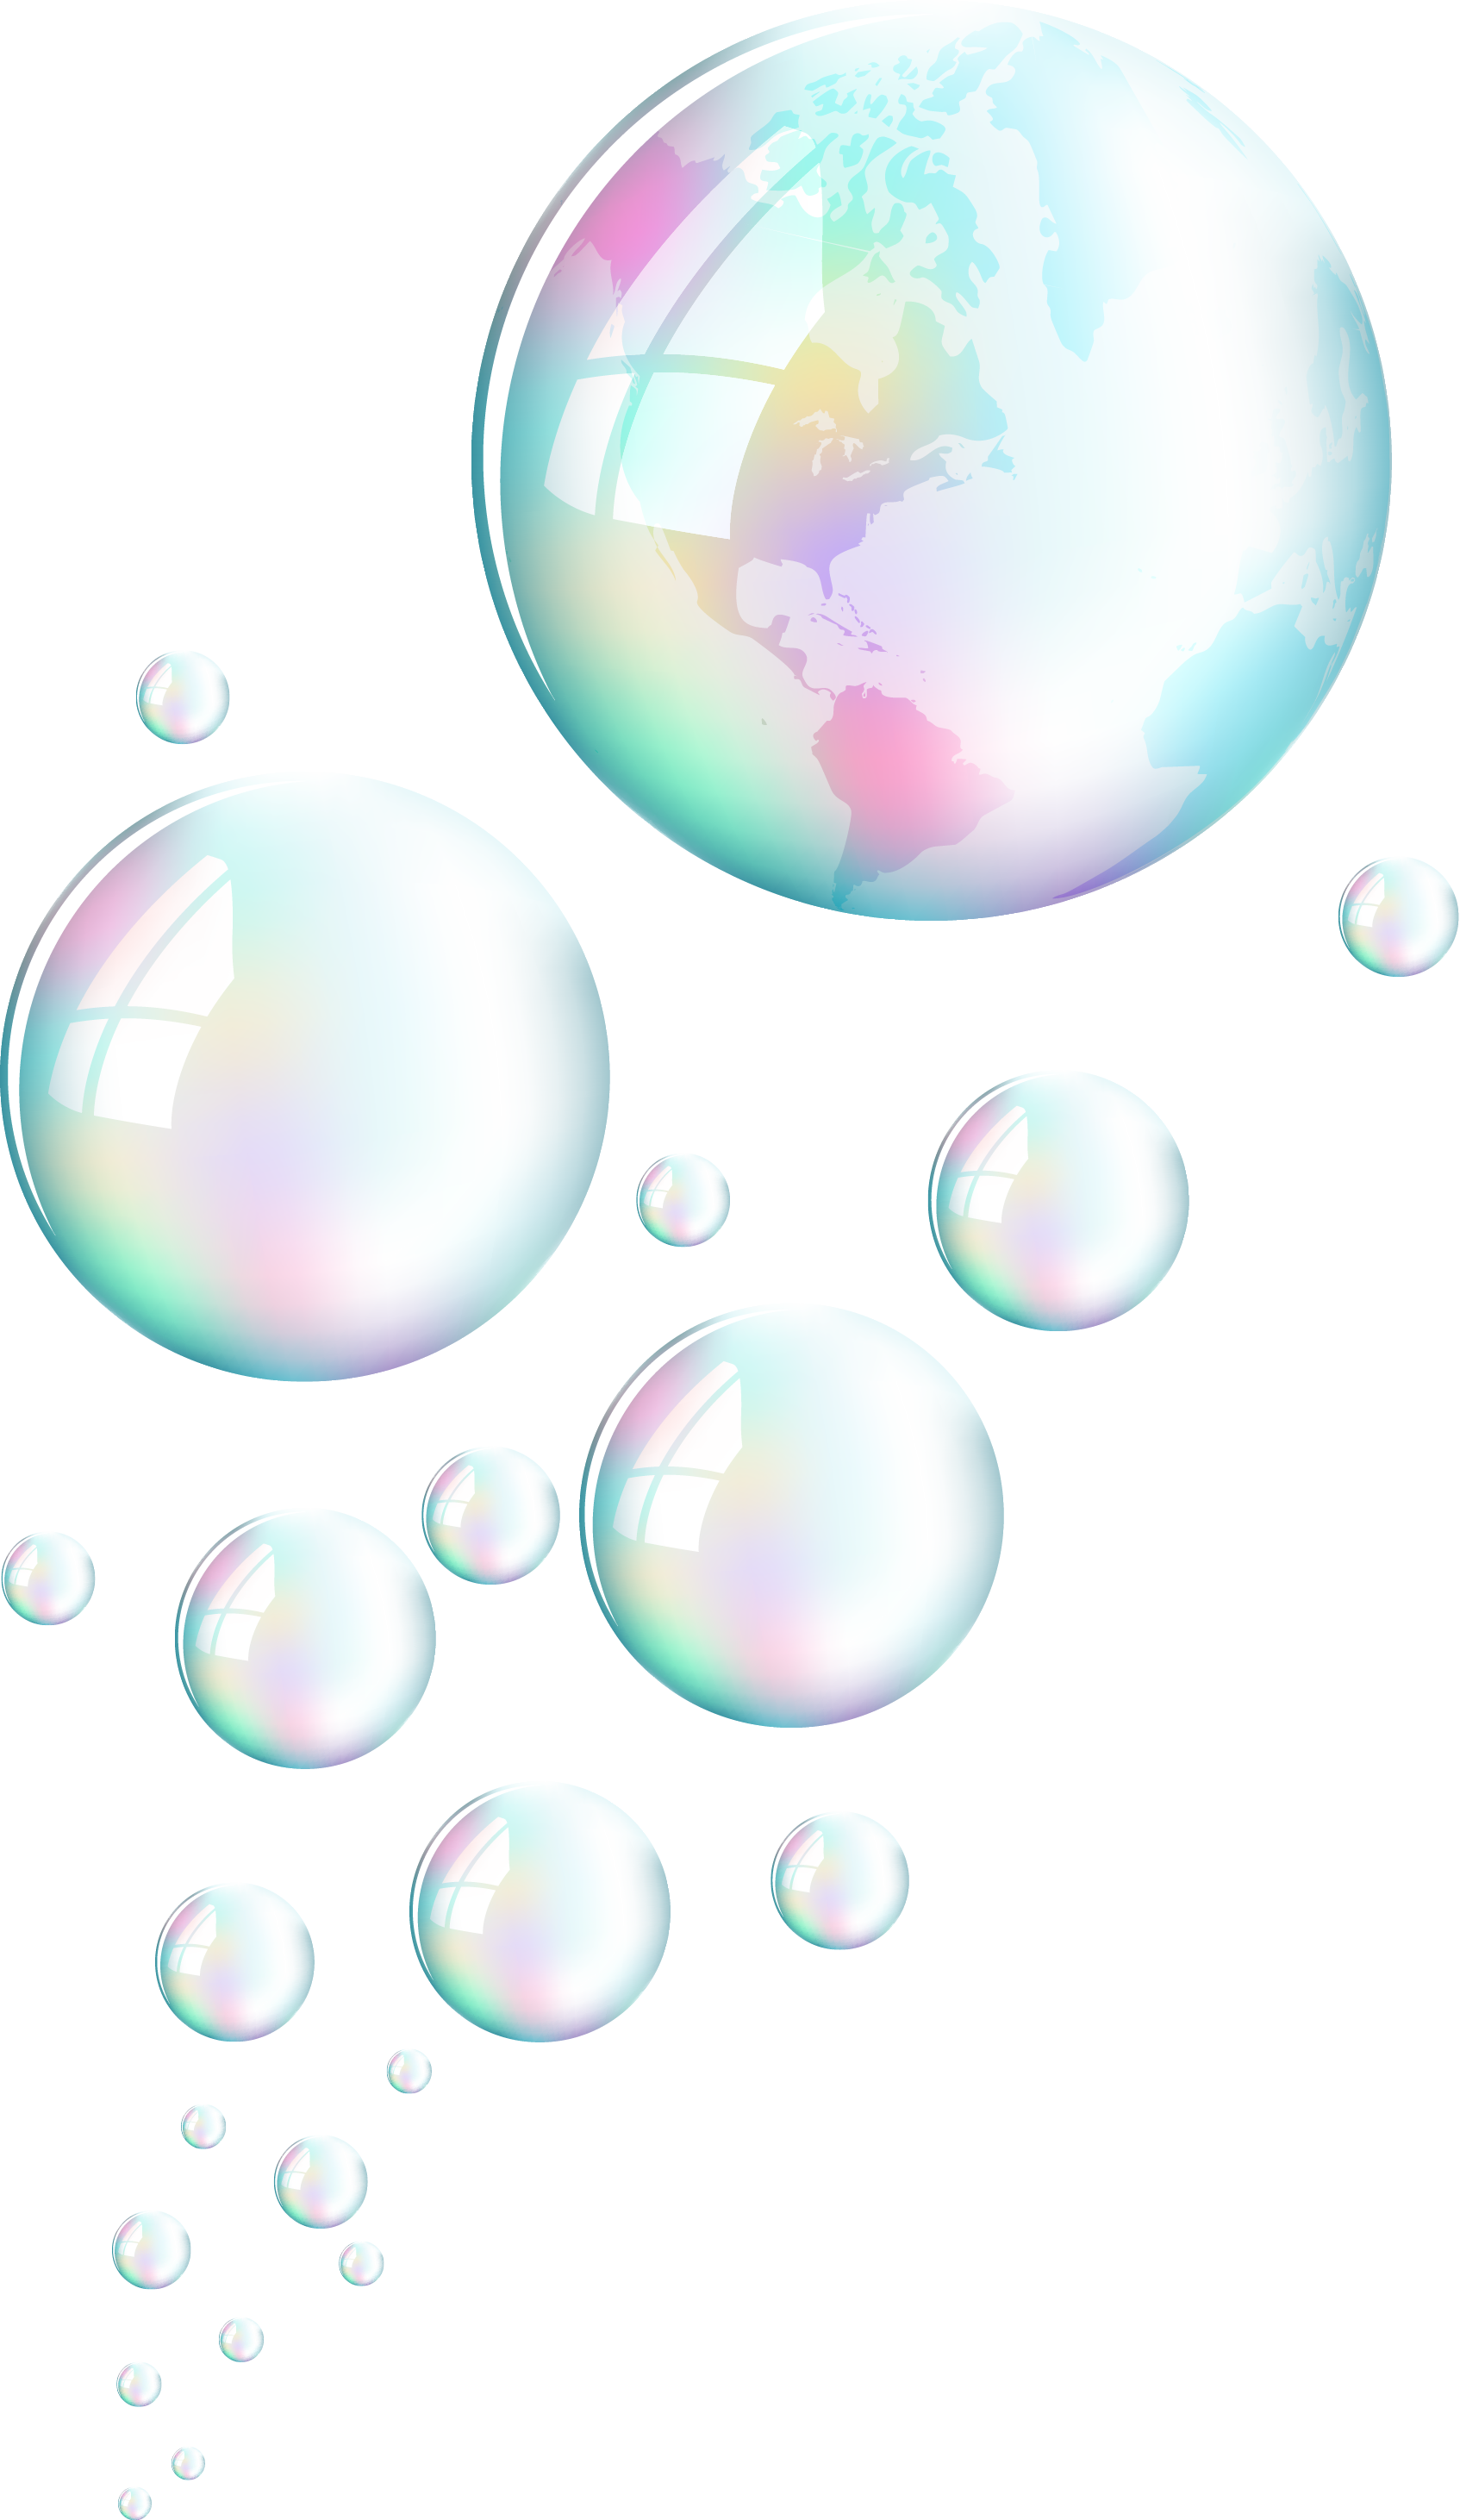 Transparent Bubbles Png Water Large Bubbles Transparent Png